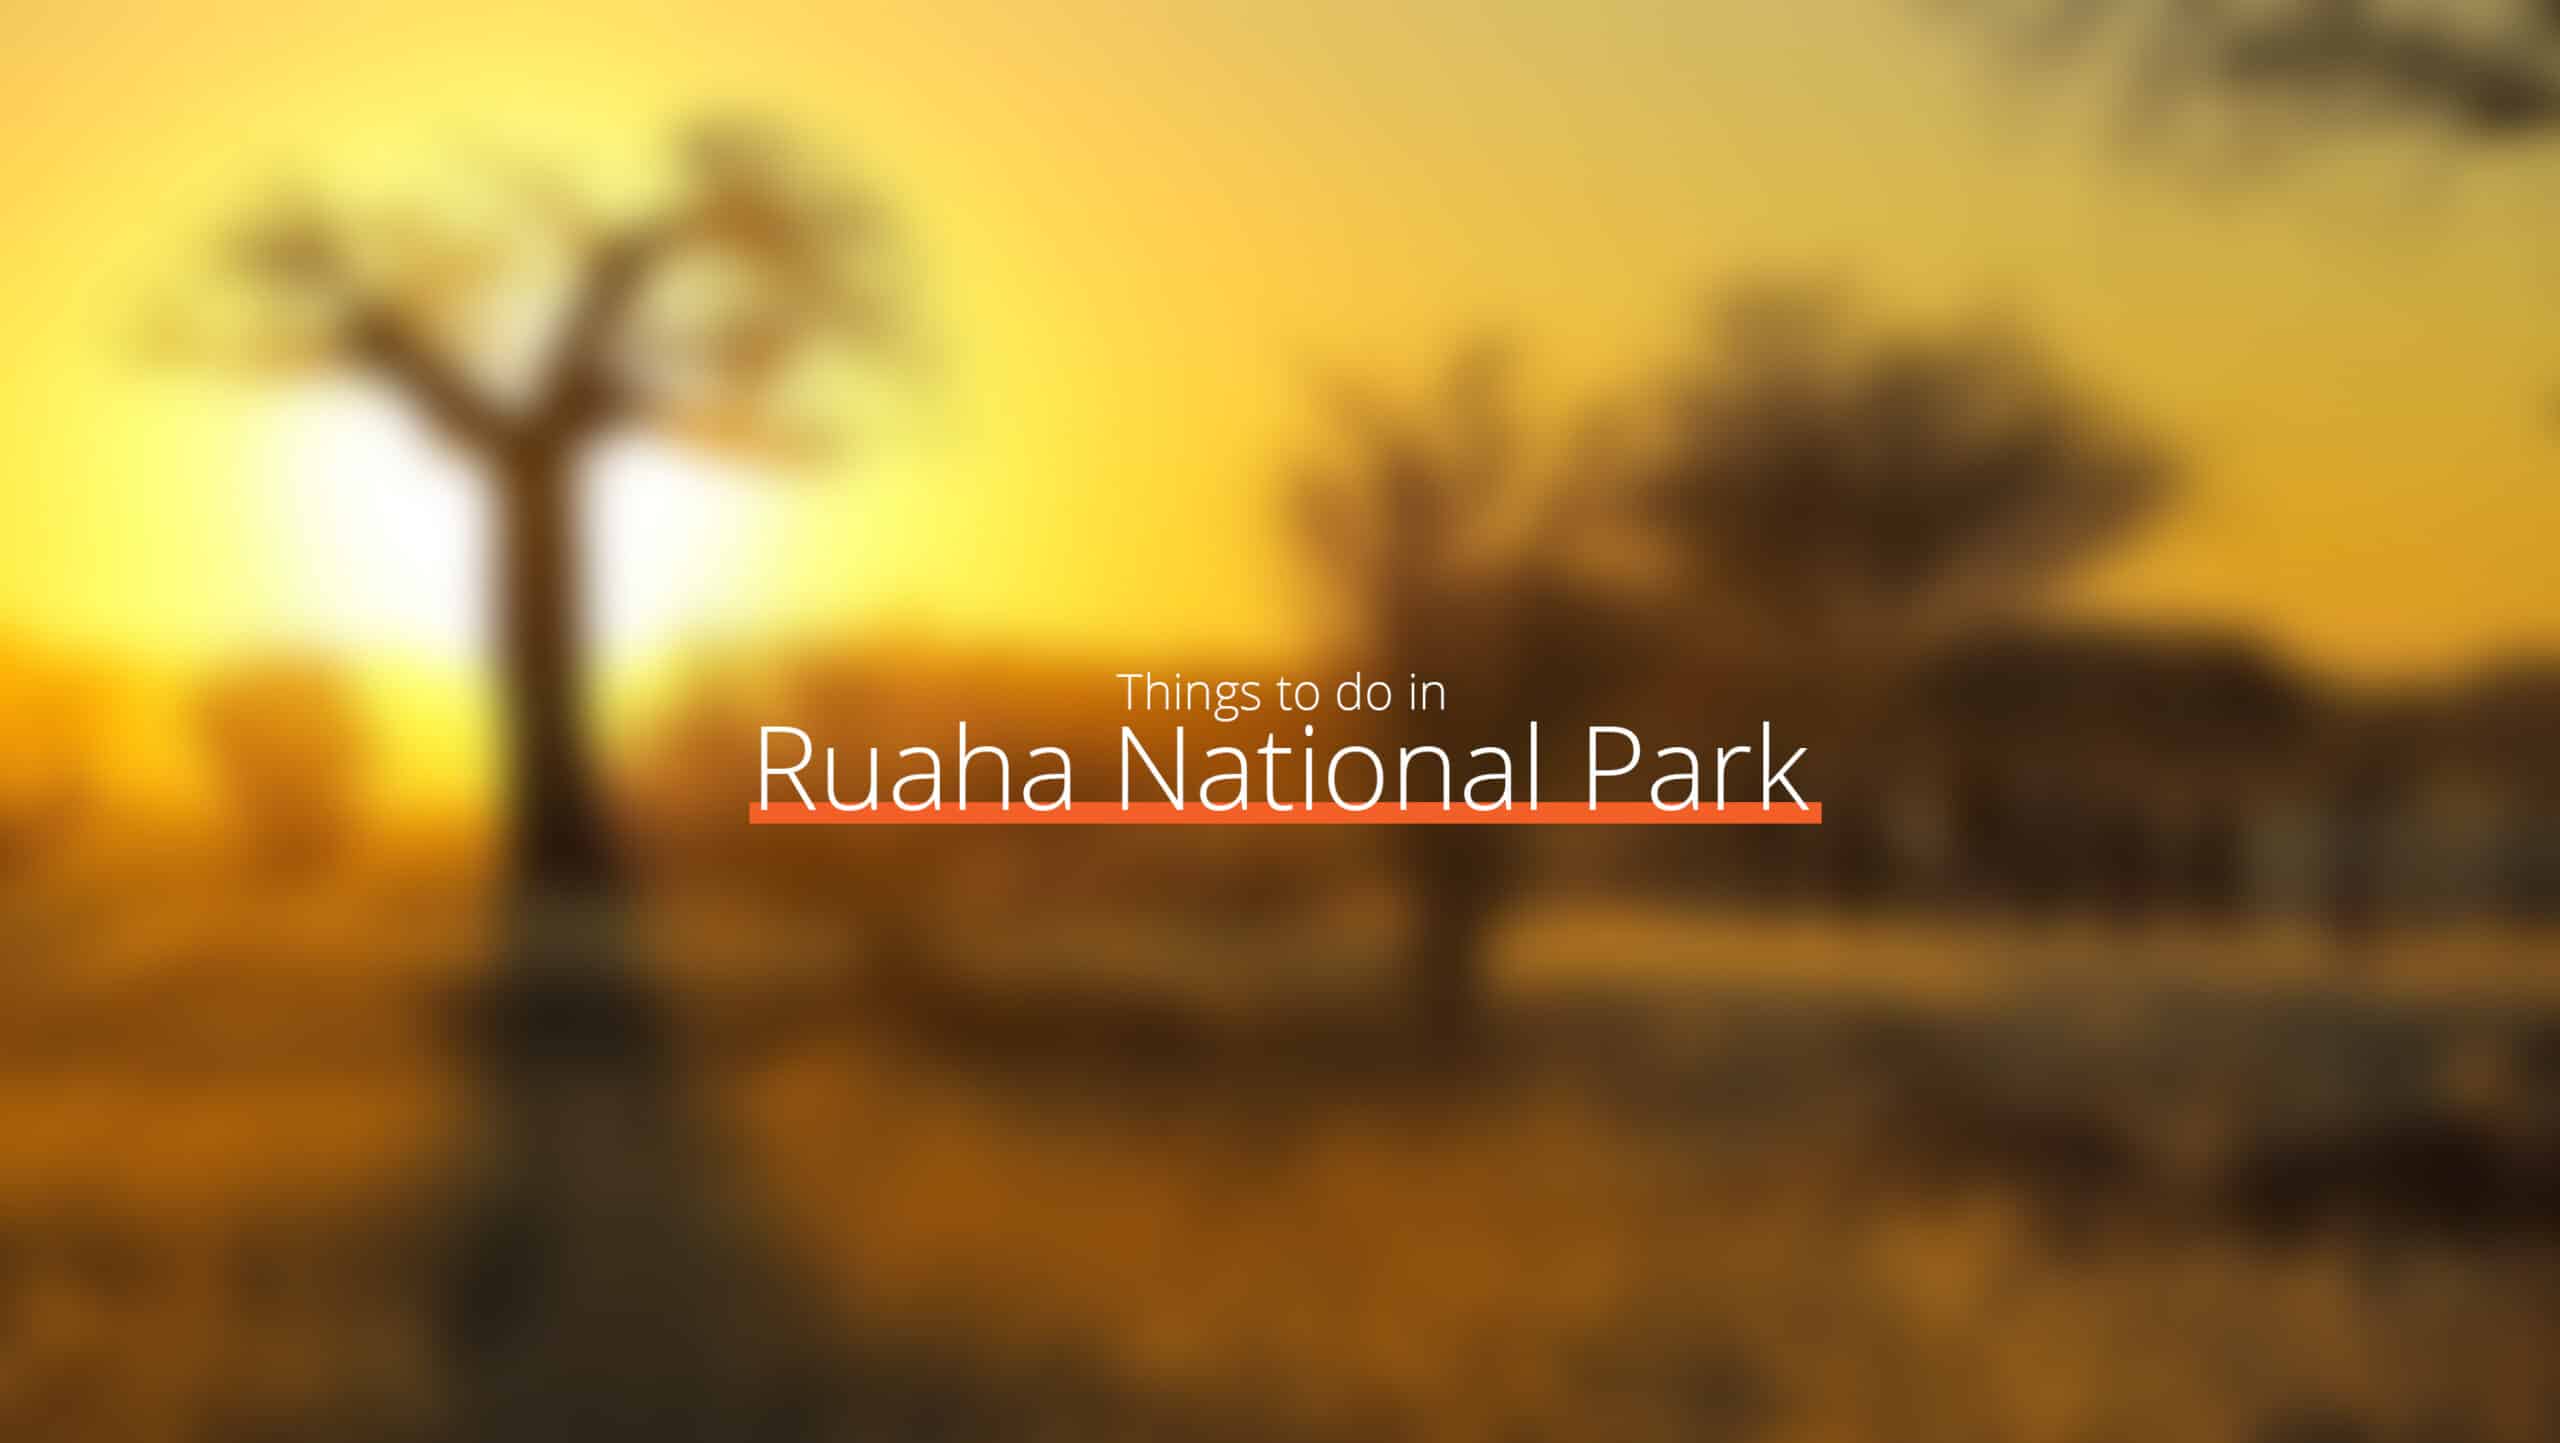 坦桑尼亚 - ruaha 国家公园规模 - 当地法律和习俗